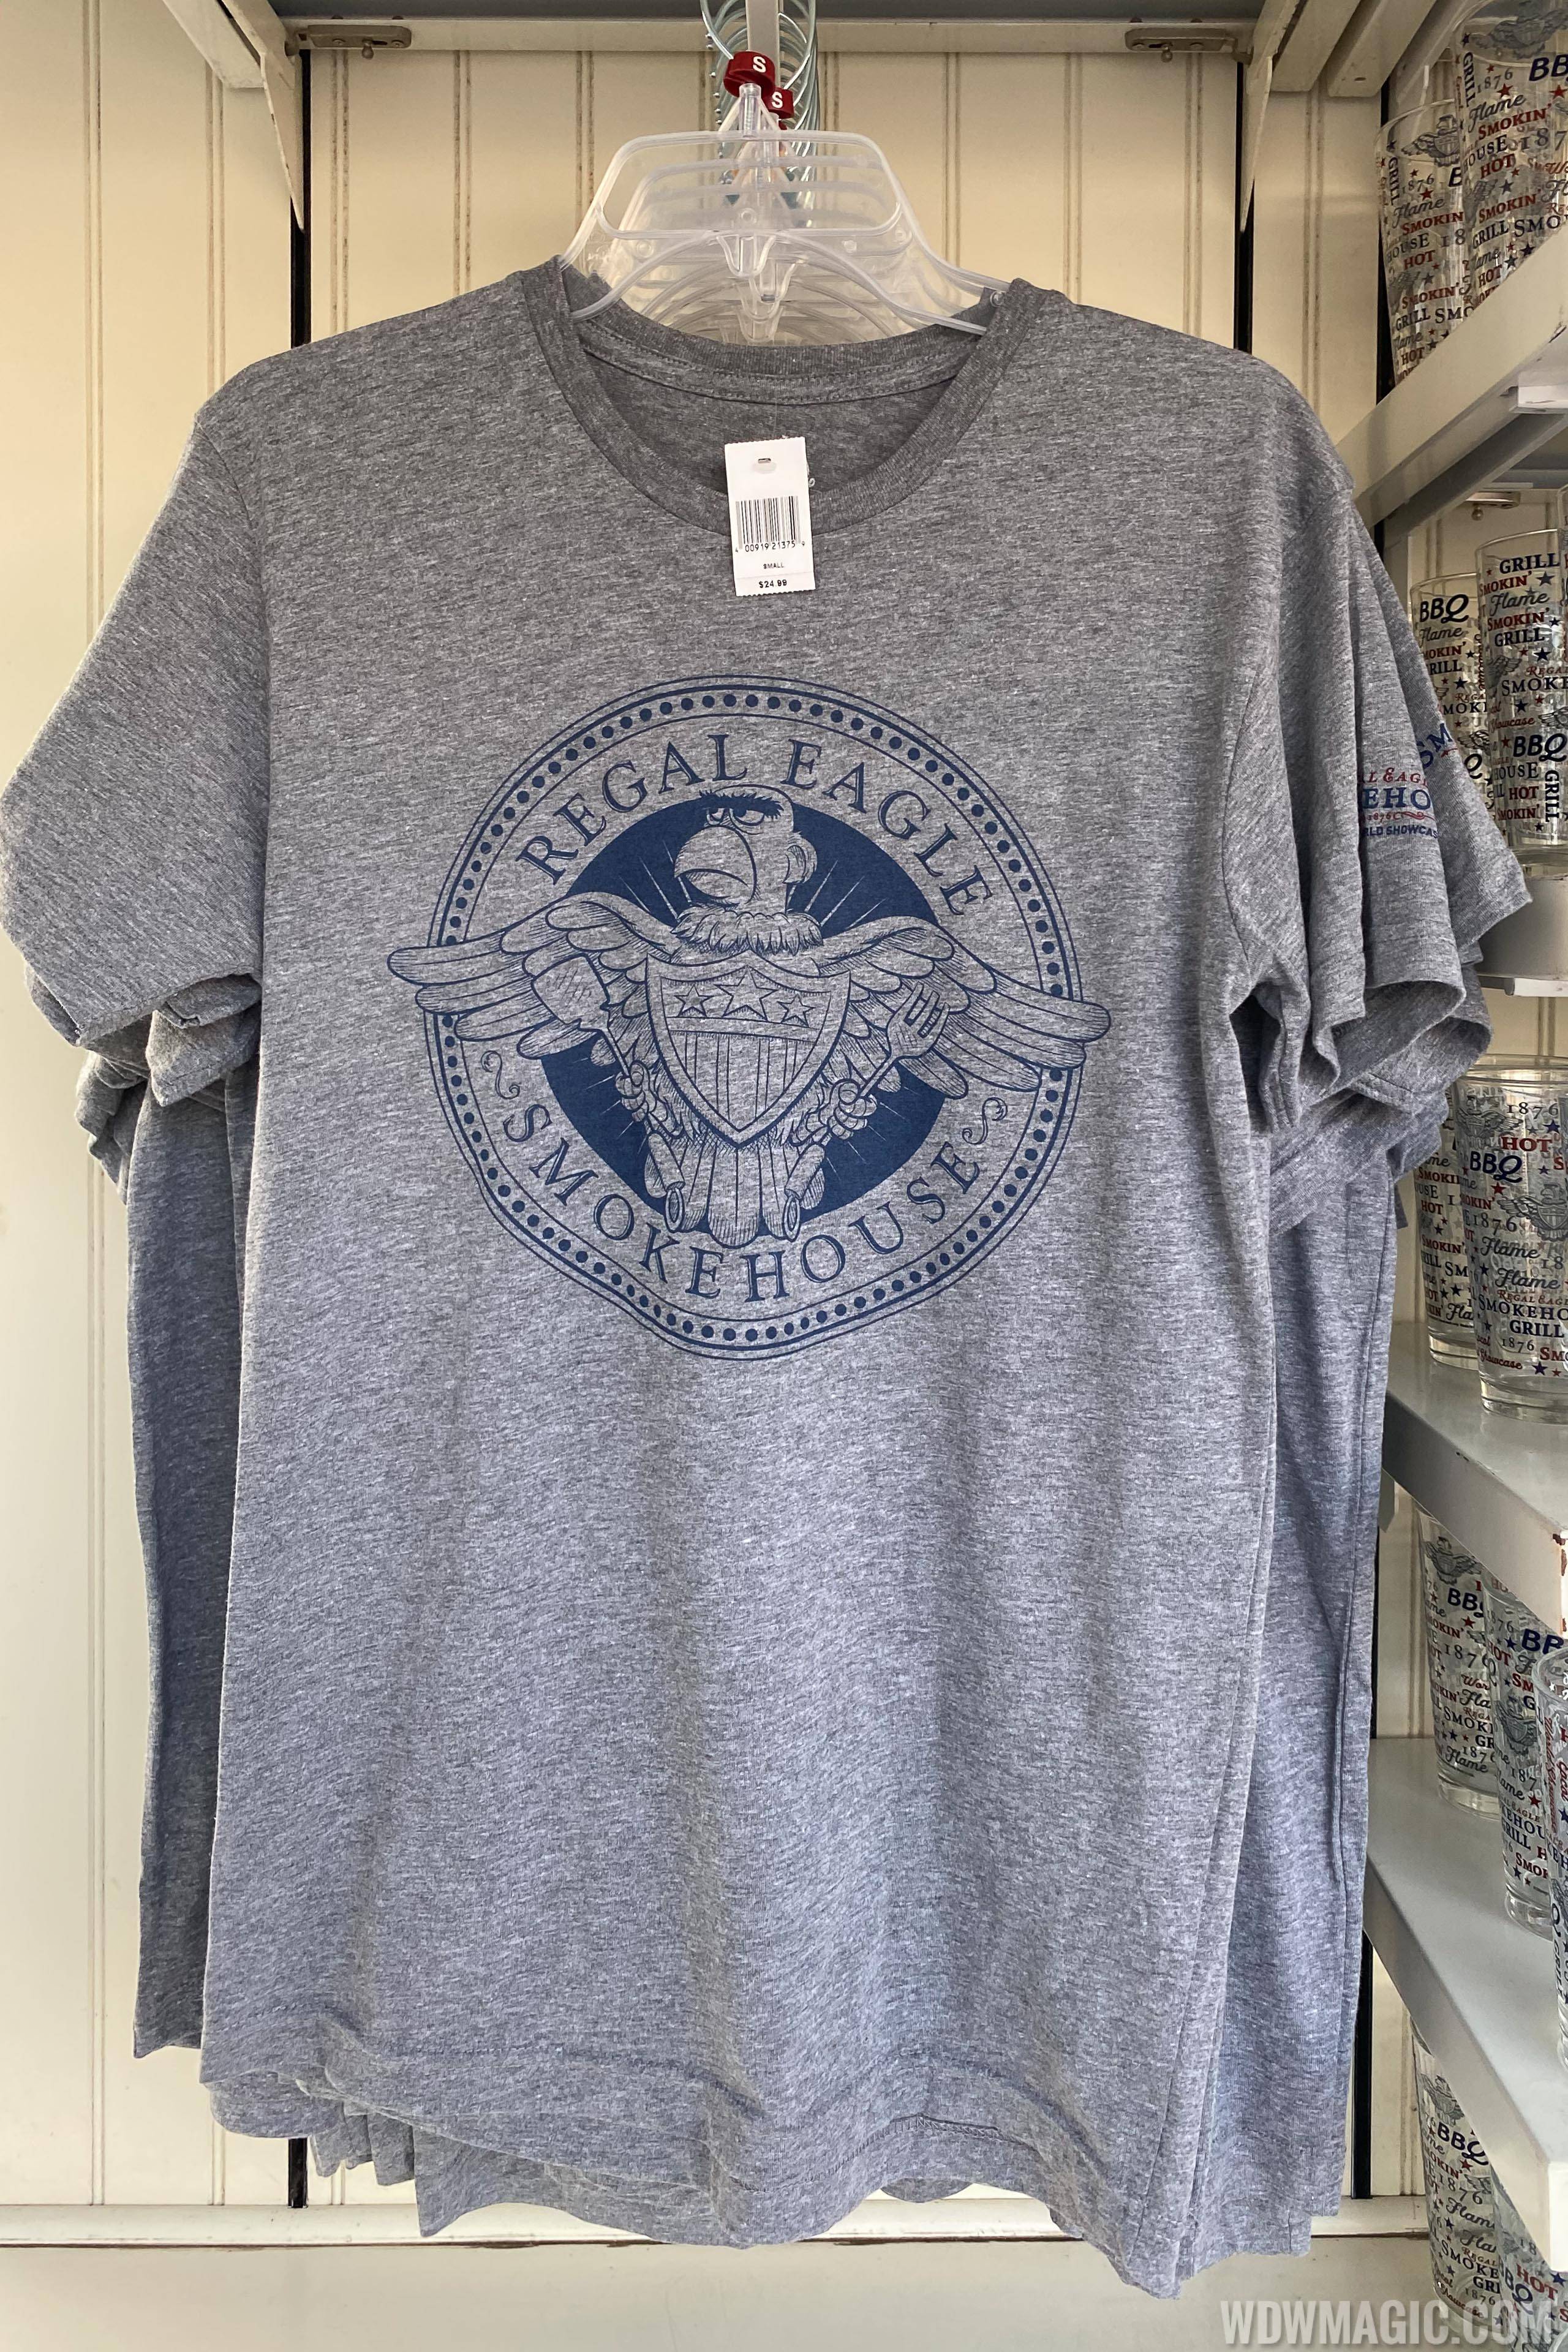 Regal Eagle Smokehouse T-shirt